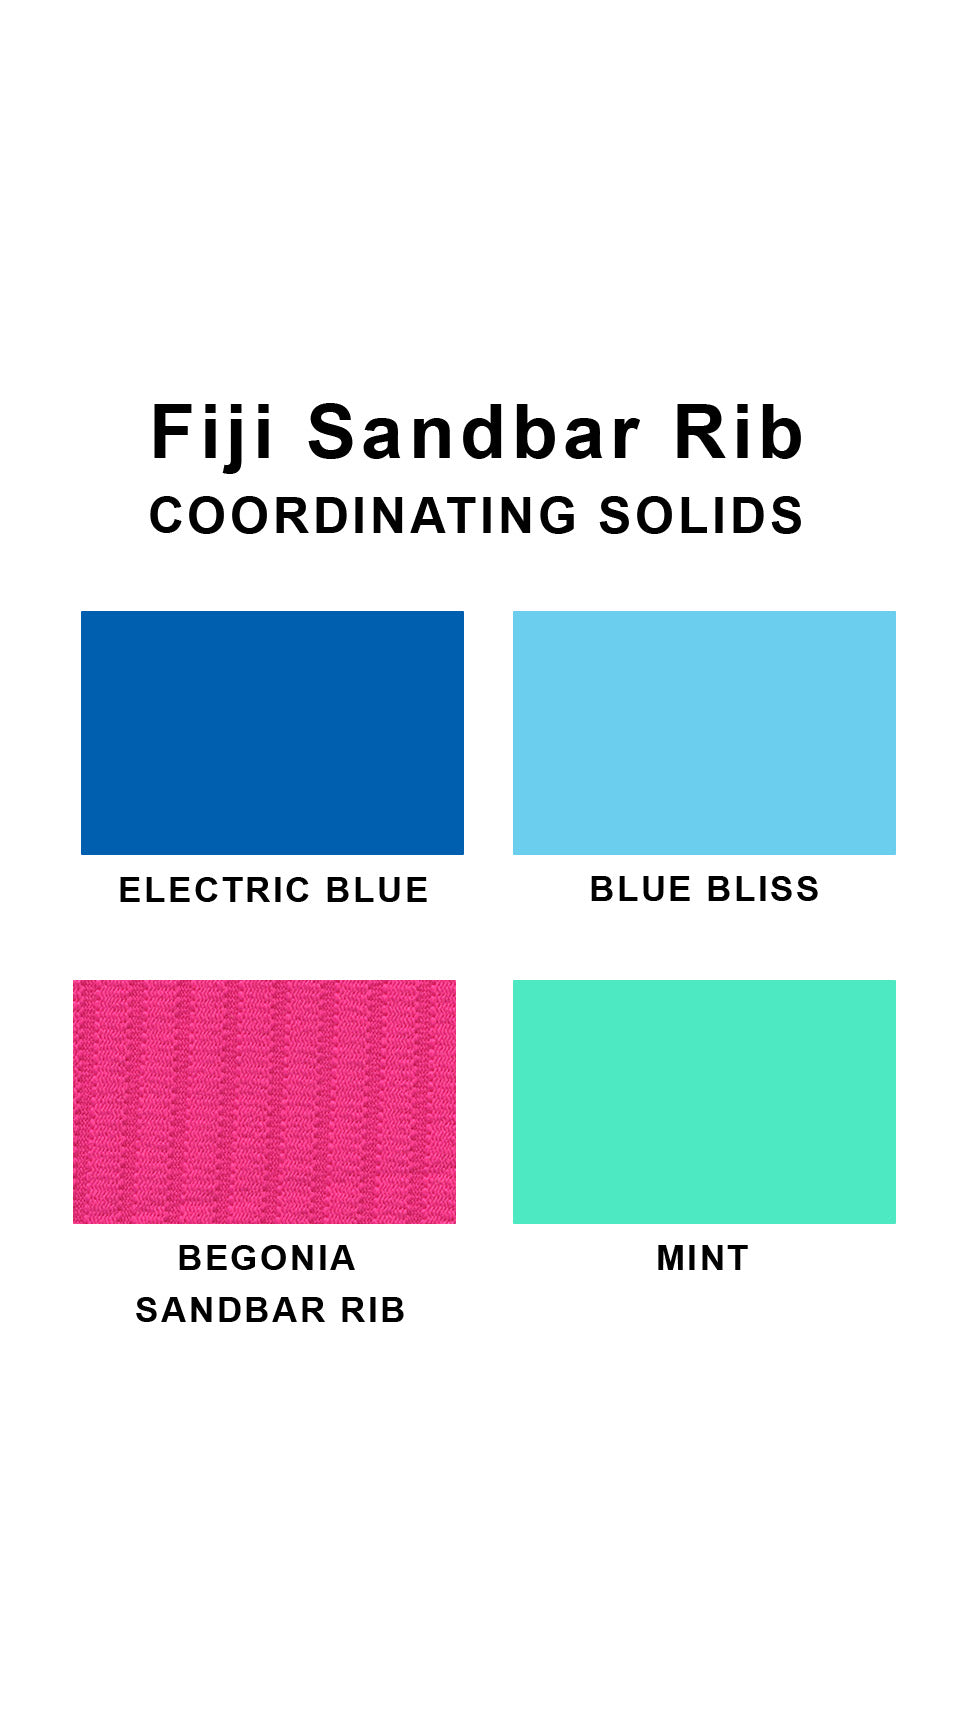 Coordinating solids chart for Fiji Sandbar Rib swimsuit print: Electric Blue, Blue Bliss, Begonia Sandbar Rib and Mint